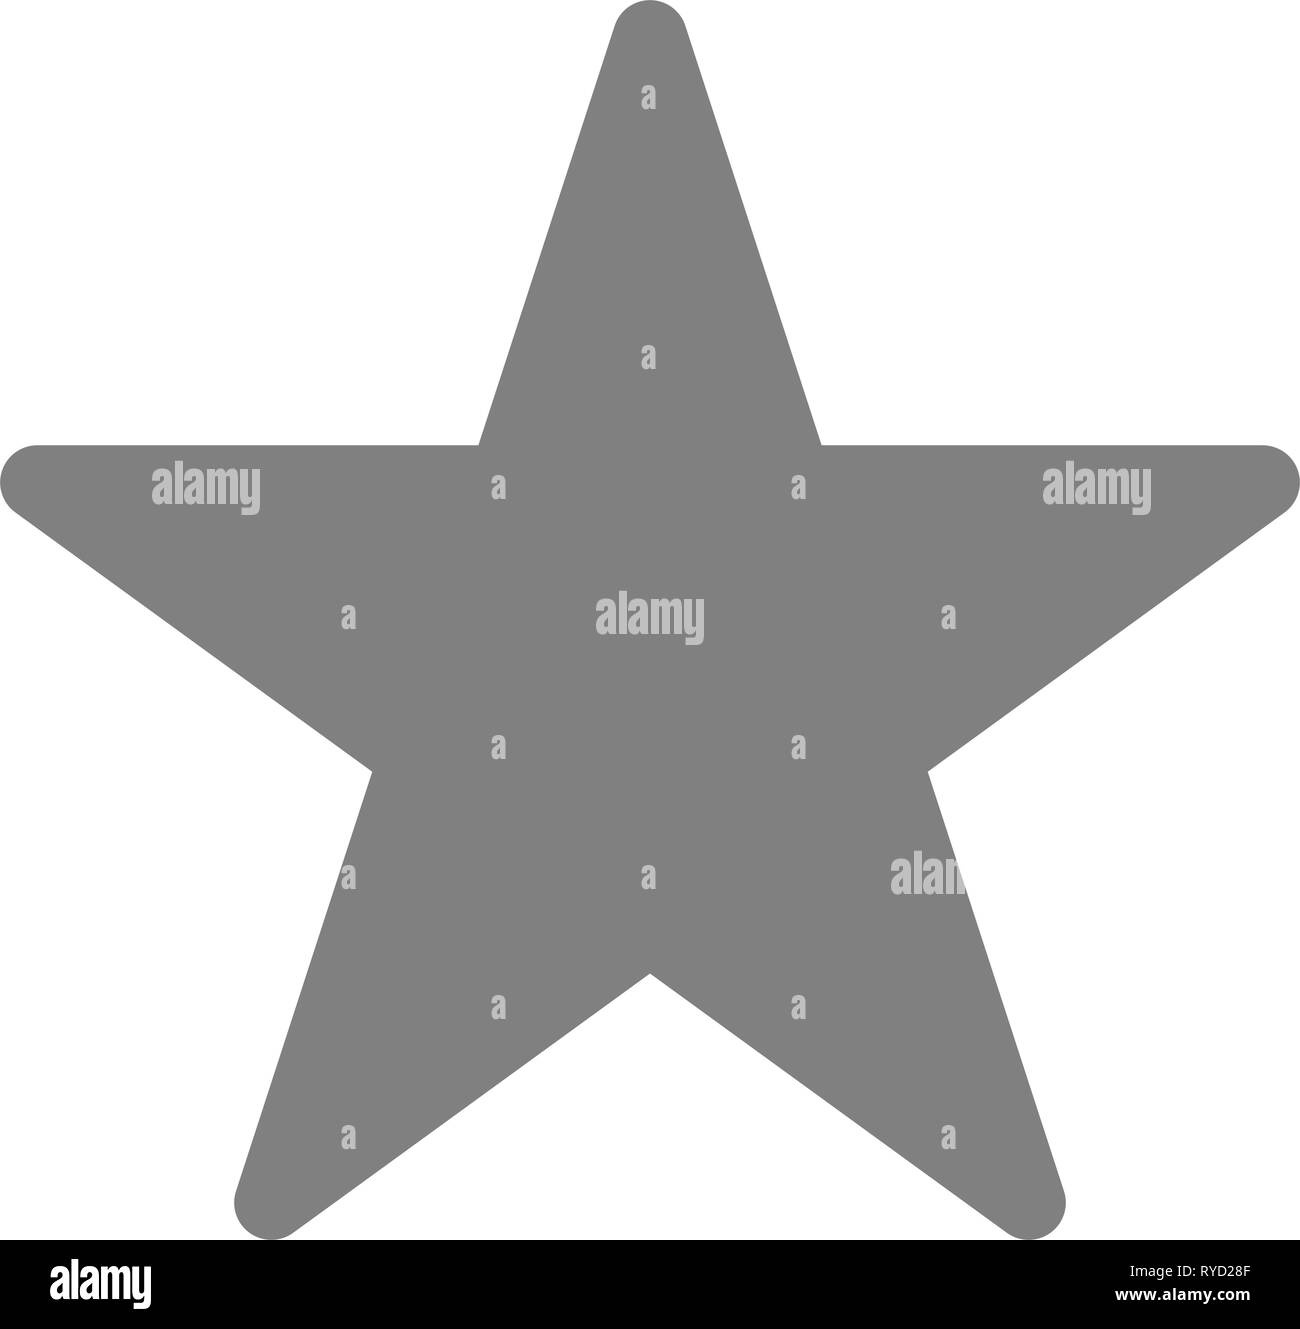 Stella simbolo icona - grigio semplice, 5 punte arrotondate, isolato - illustrazione vettoriale Illustrazione Vettoriale